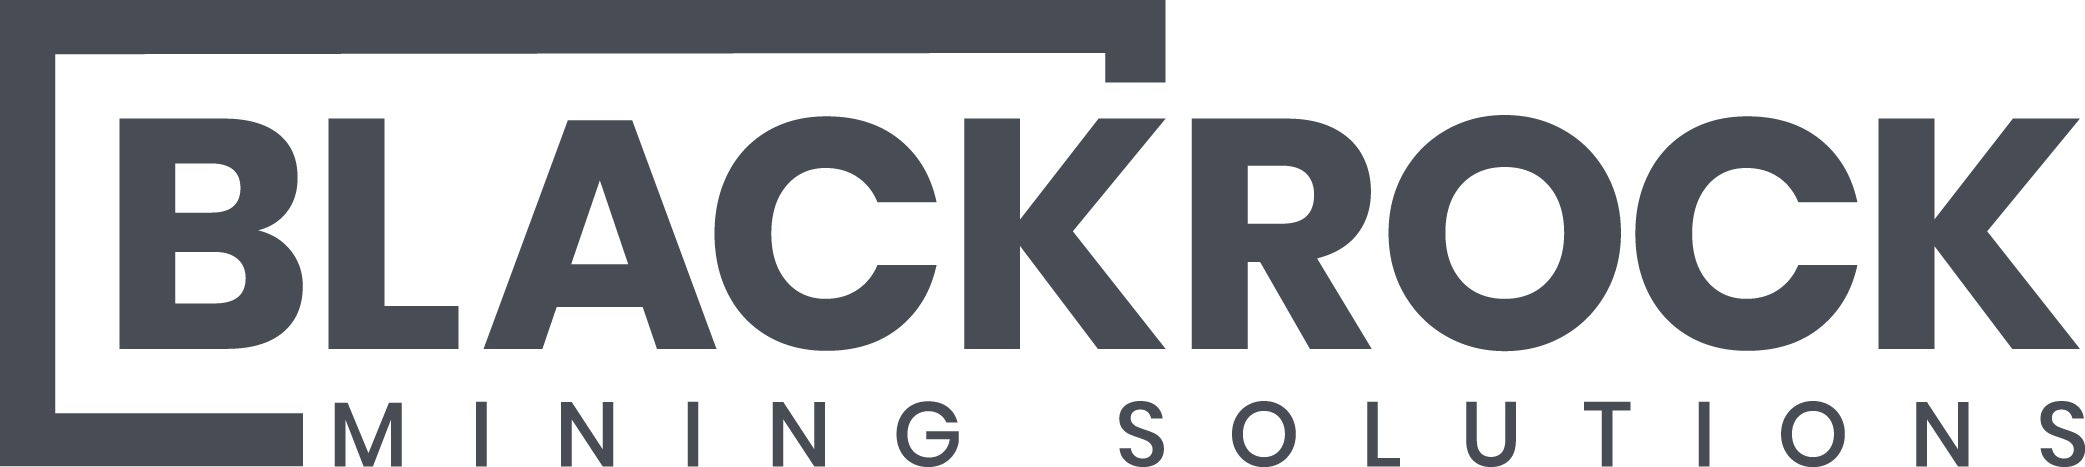 Blackrock Mining Solutions Logo